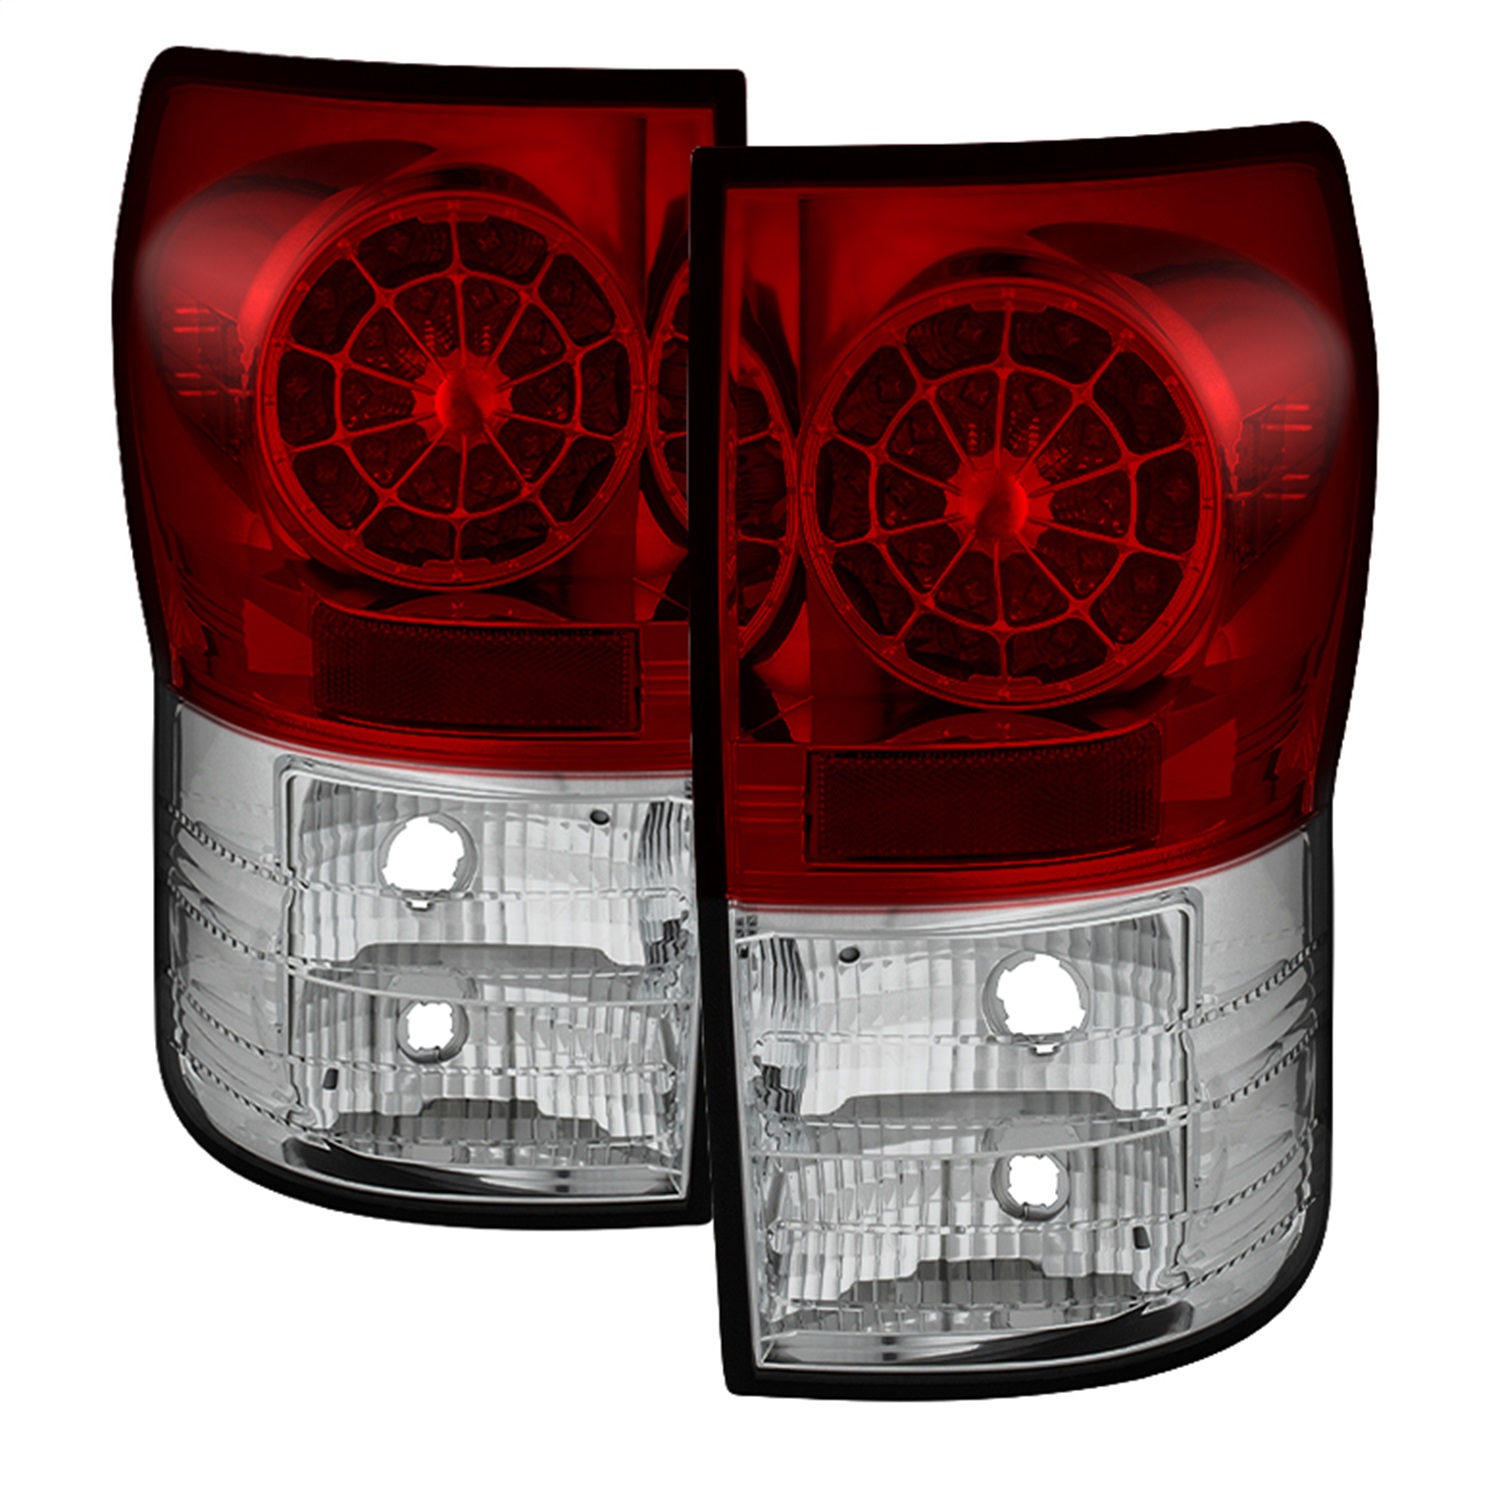 Spyder Auto 5029607 LED Tail Lights Fits 07-13 Tundra